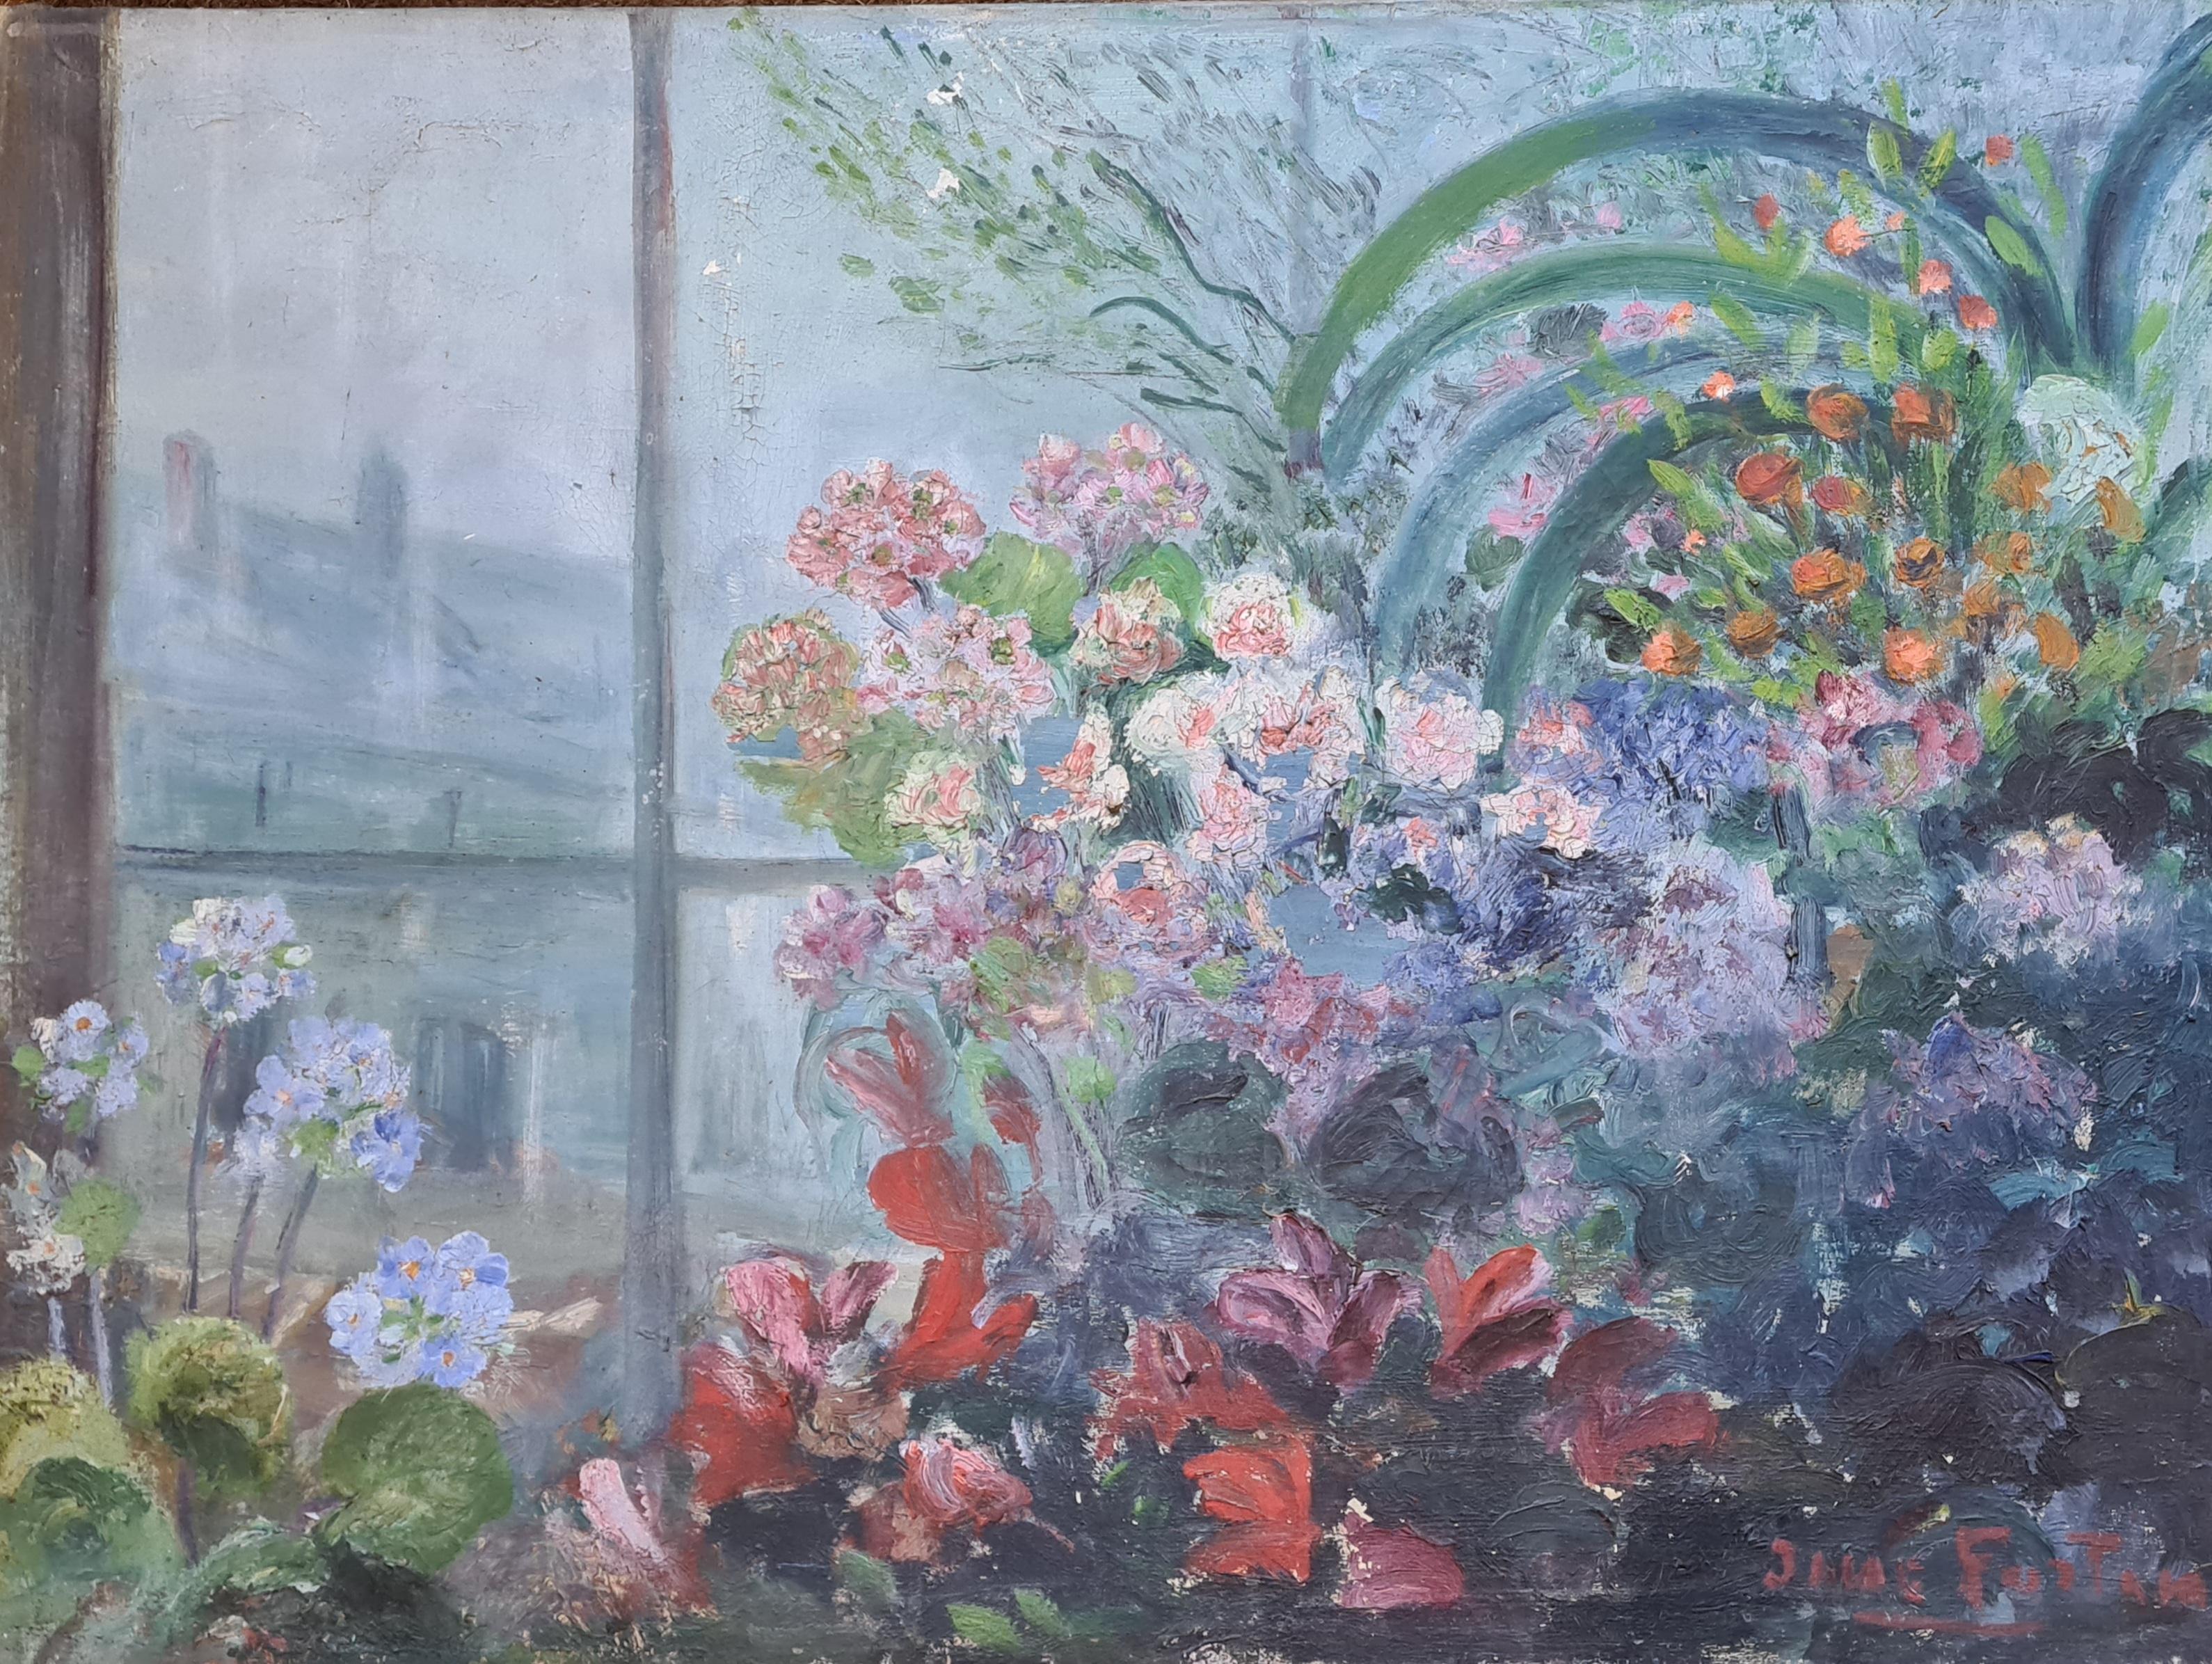 Interior Painting June Fortan - Vue d'un intérieur impressionniste français, abondance florale, vue d'une fenêtre